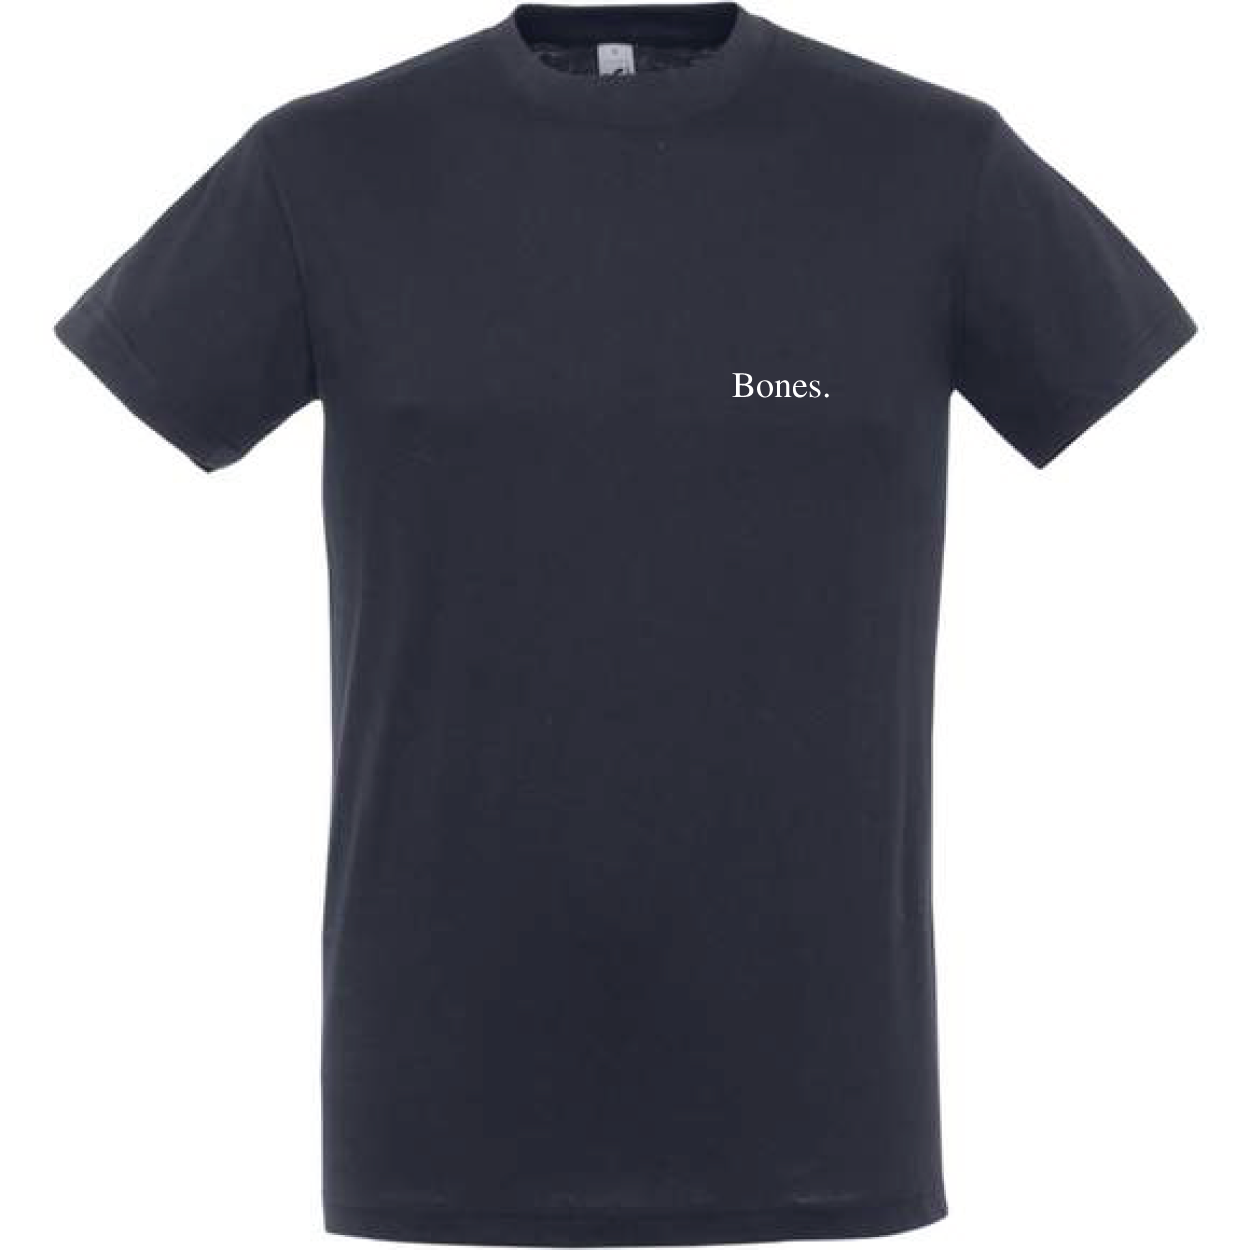 Ezriel - T-Shirt à manches courtes Unisexe